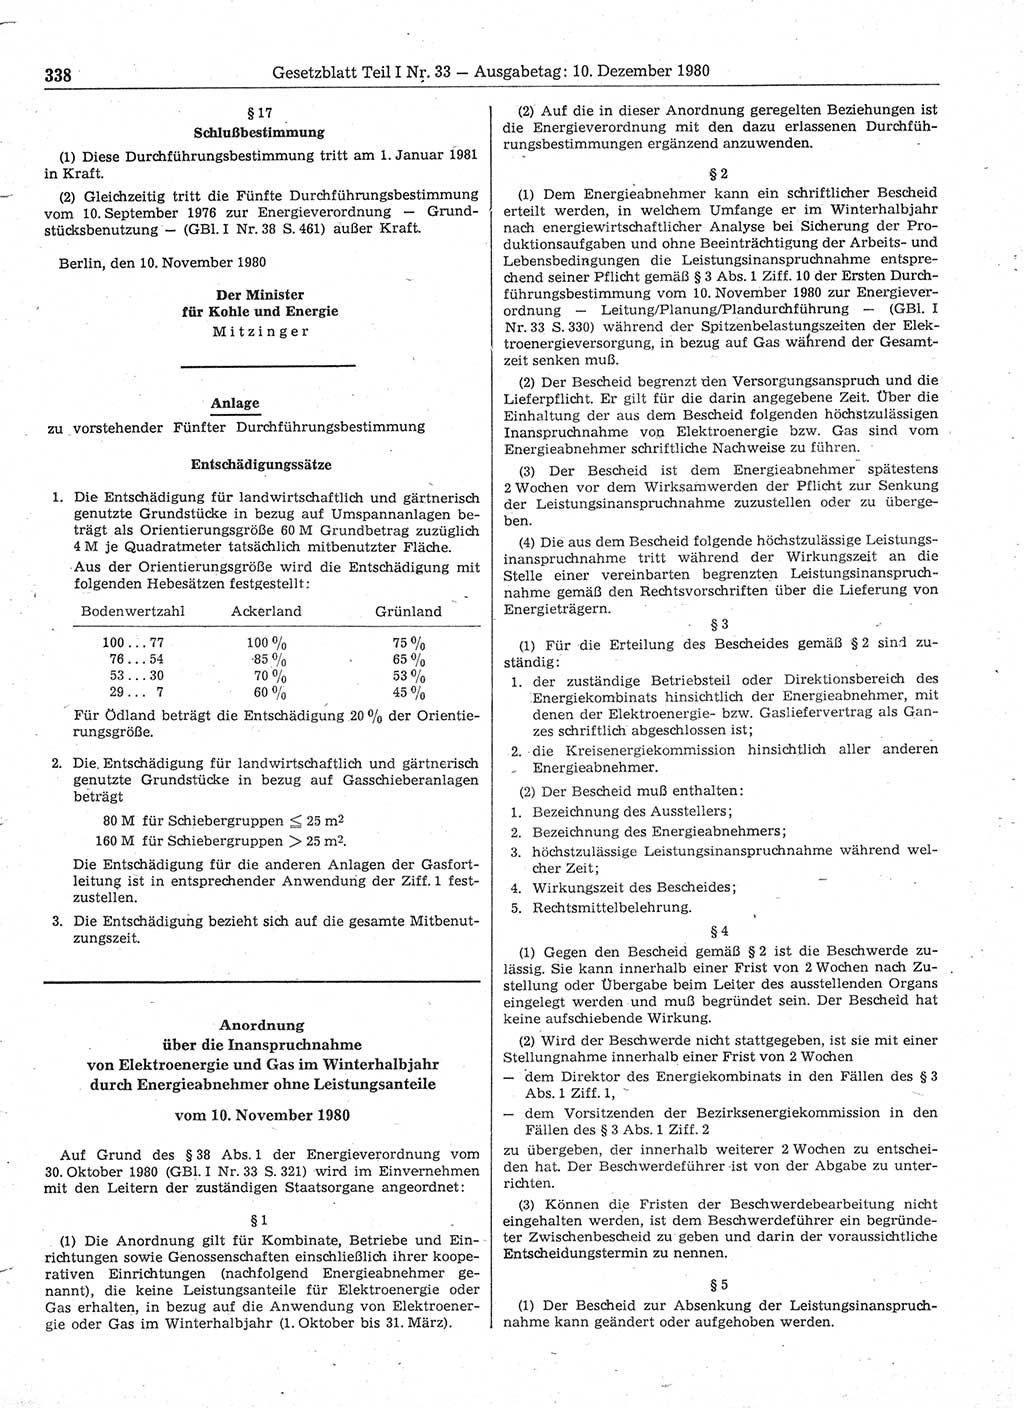 Gesetzblatt (GBl.) der Deutschen Demokratischen Republik (DDR) Teil Ⅰ 1980, Seite 338 (GBl. DDR Ⅰ 1980, S. 338)